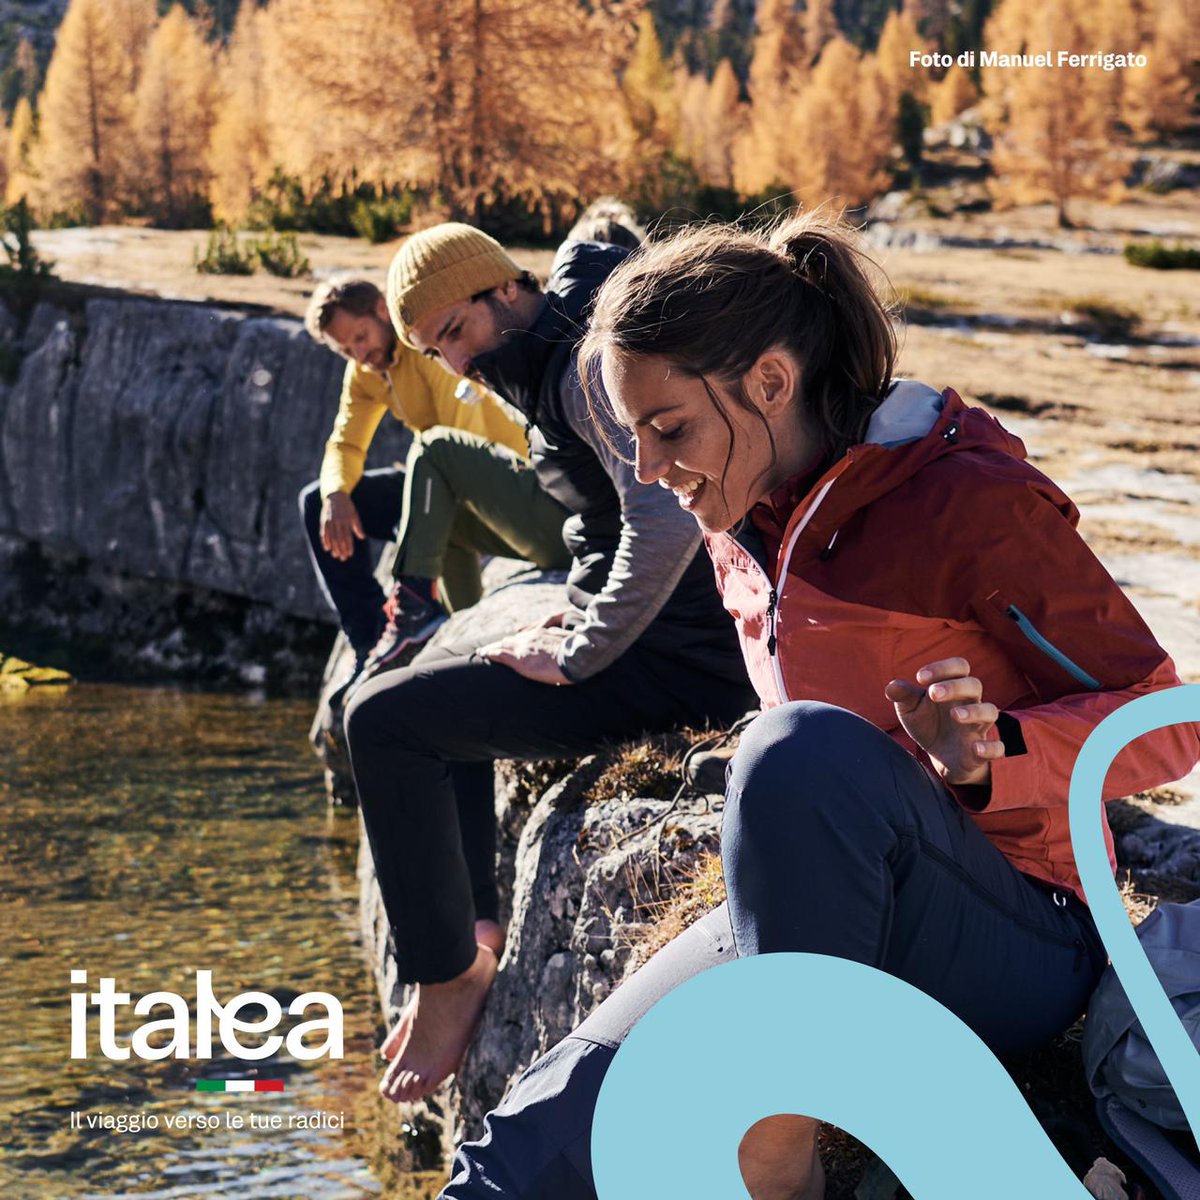 Il progetto #Italea lanciato dal MAECI @ItalyMFA e rivolto a italiani residenti all’estero e italodiscendenti propone agevolazioni ed iniziative per viaggiare in Italia e scoprire i luoghi, la cultura e le tradizioni delle loro origini.